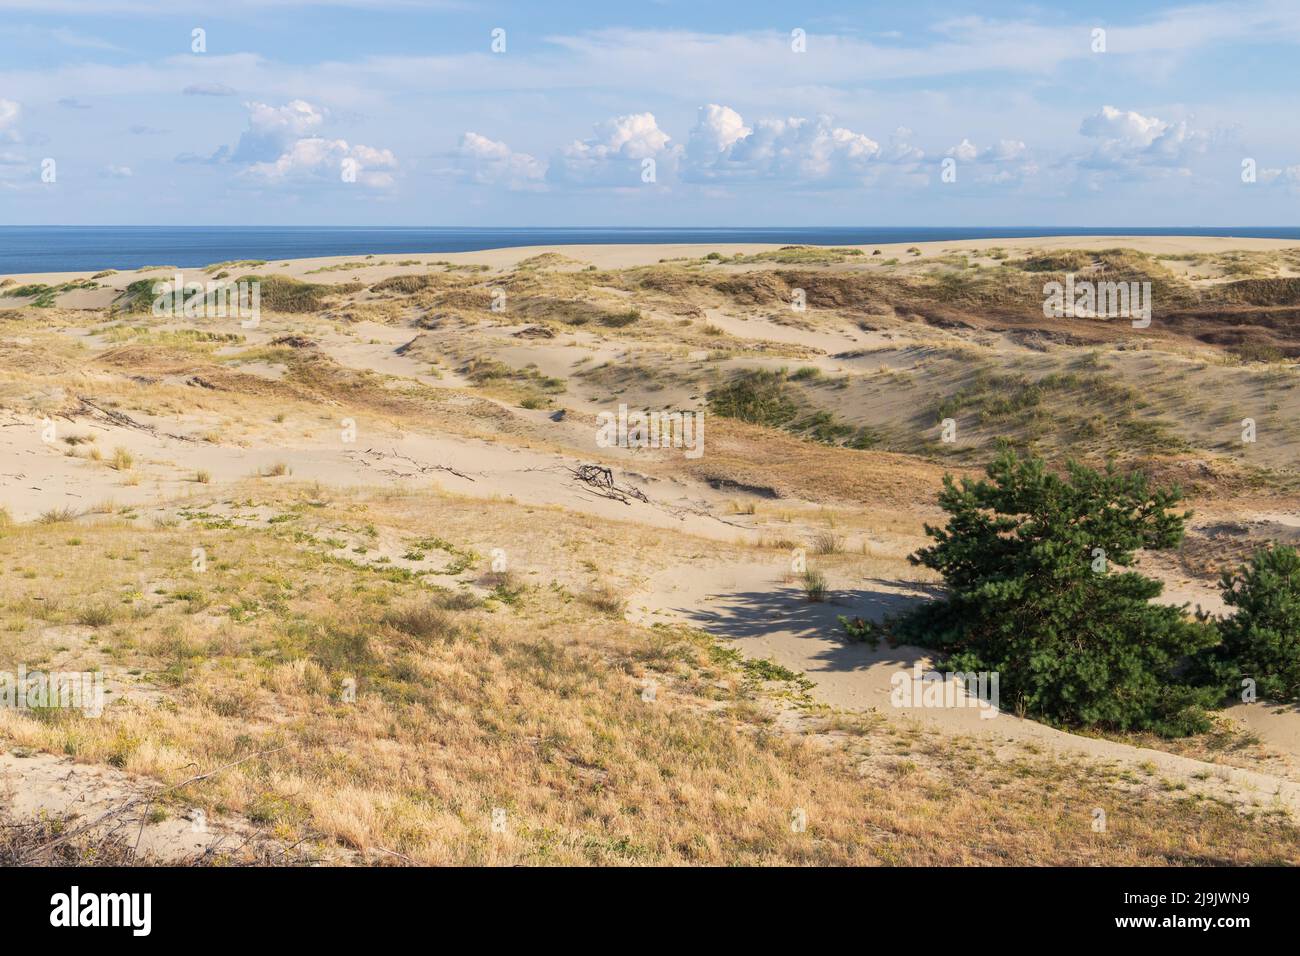 Curonian Spit paesaggio estivo con dune costiere sabbiose in una giornata di sole, Kaliningrad Oblast, Russia Foto Stock